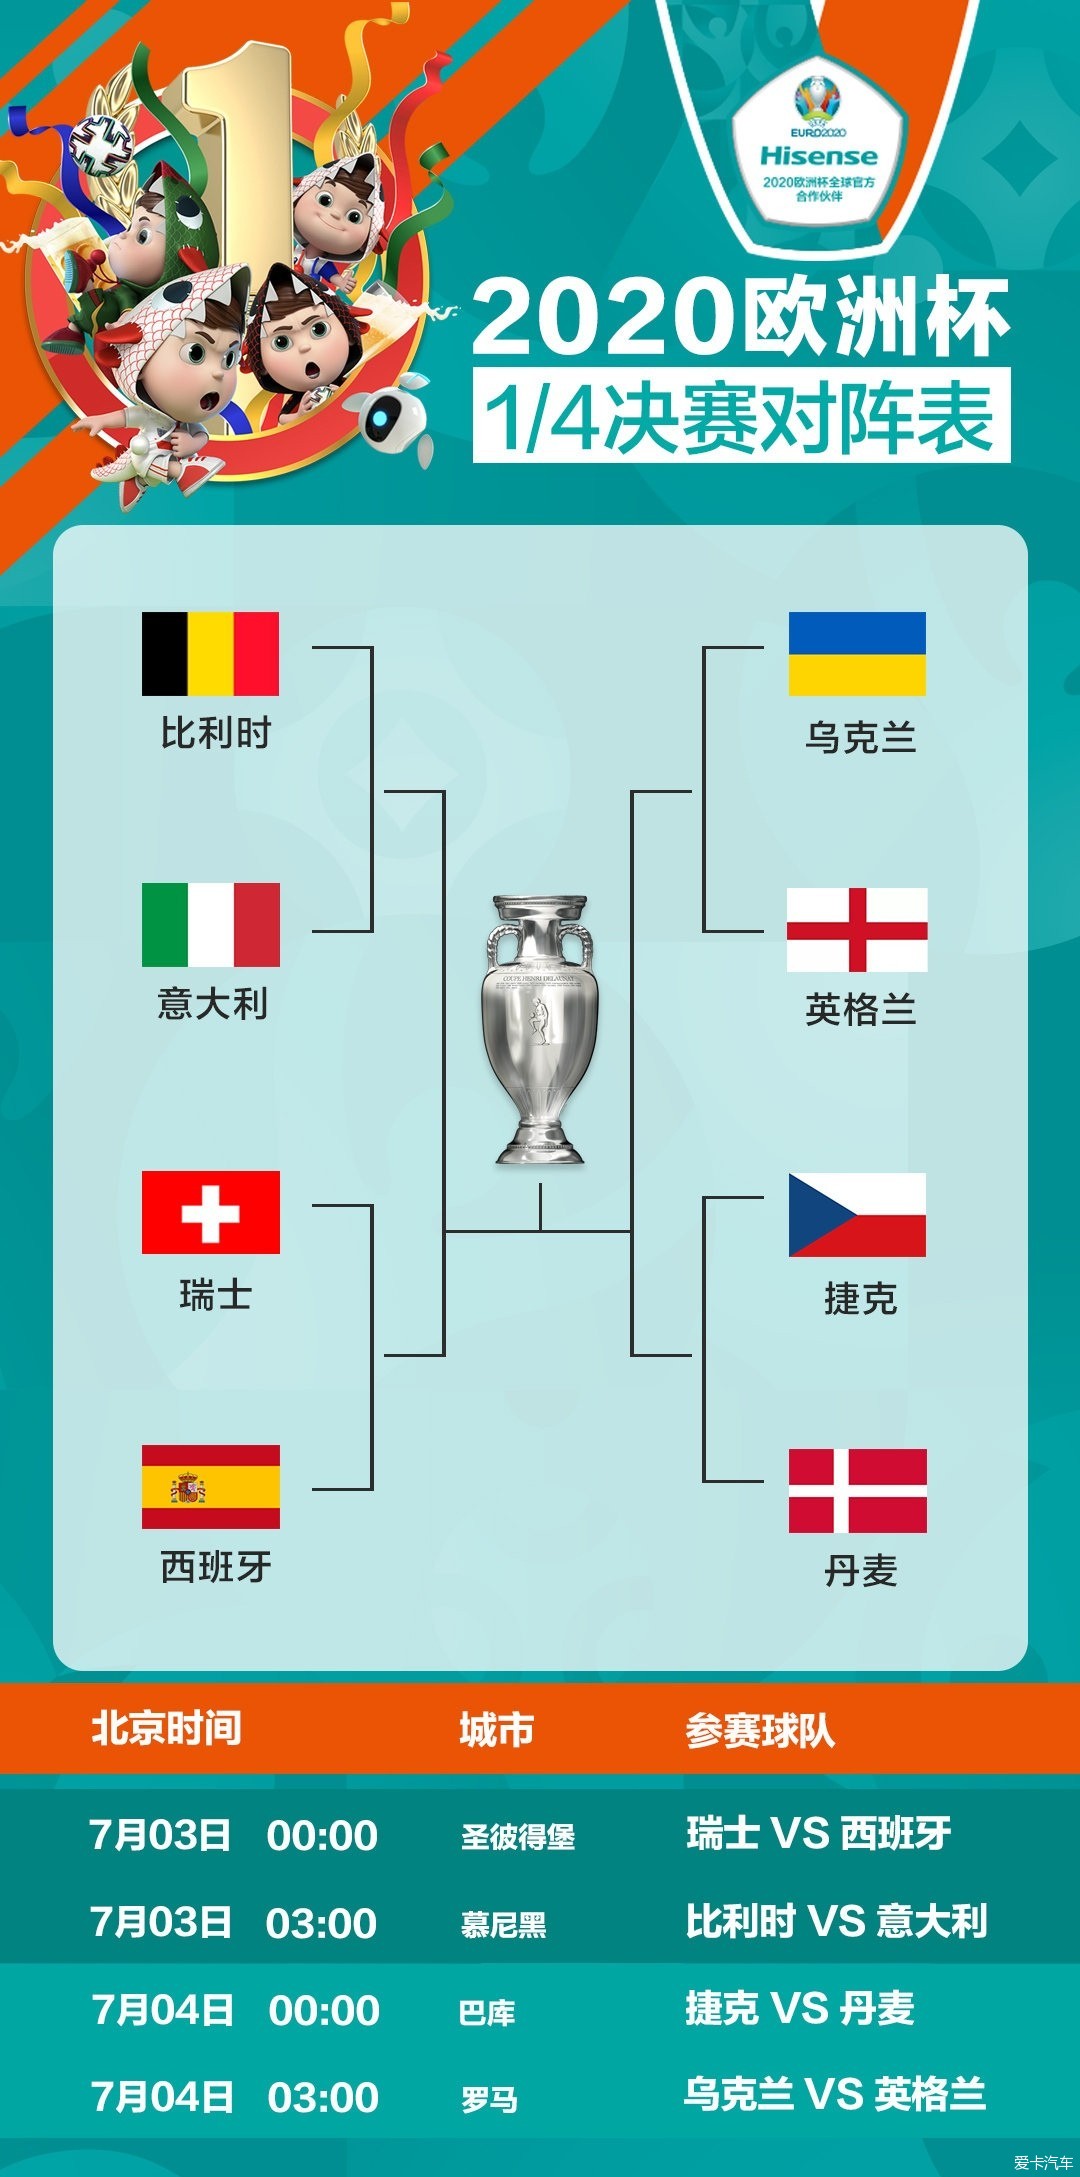 2021欧洲杯8强赛程表图片